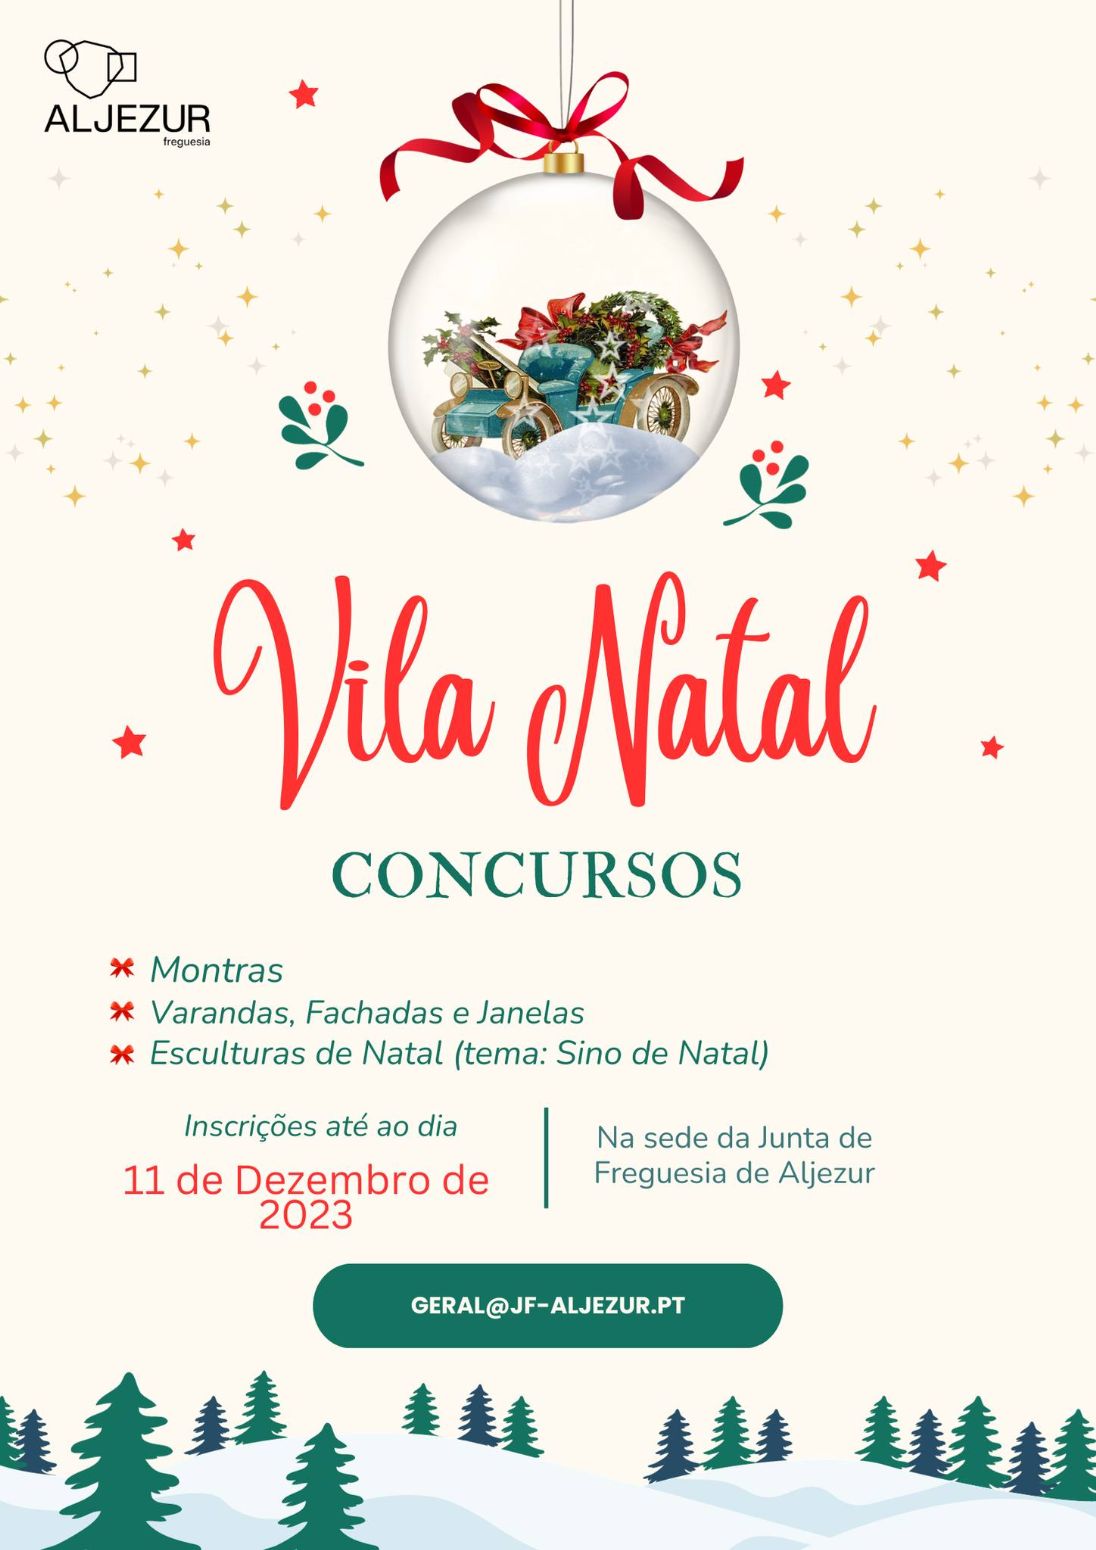 Concursos Vila Natal em Aljezur